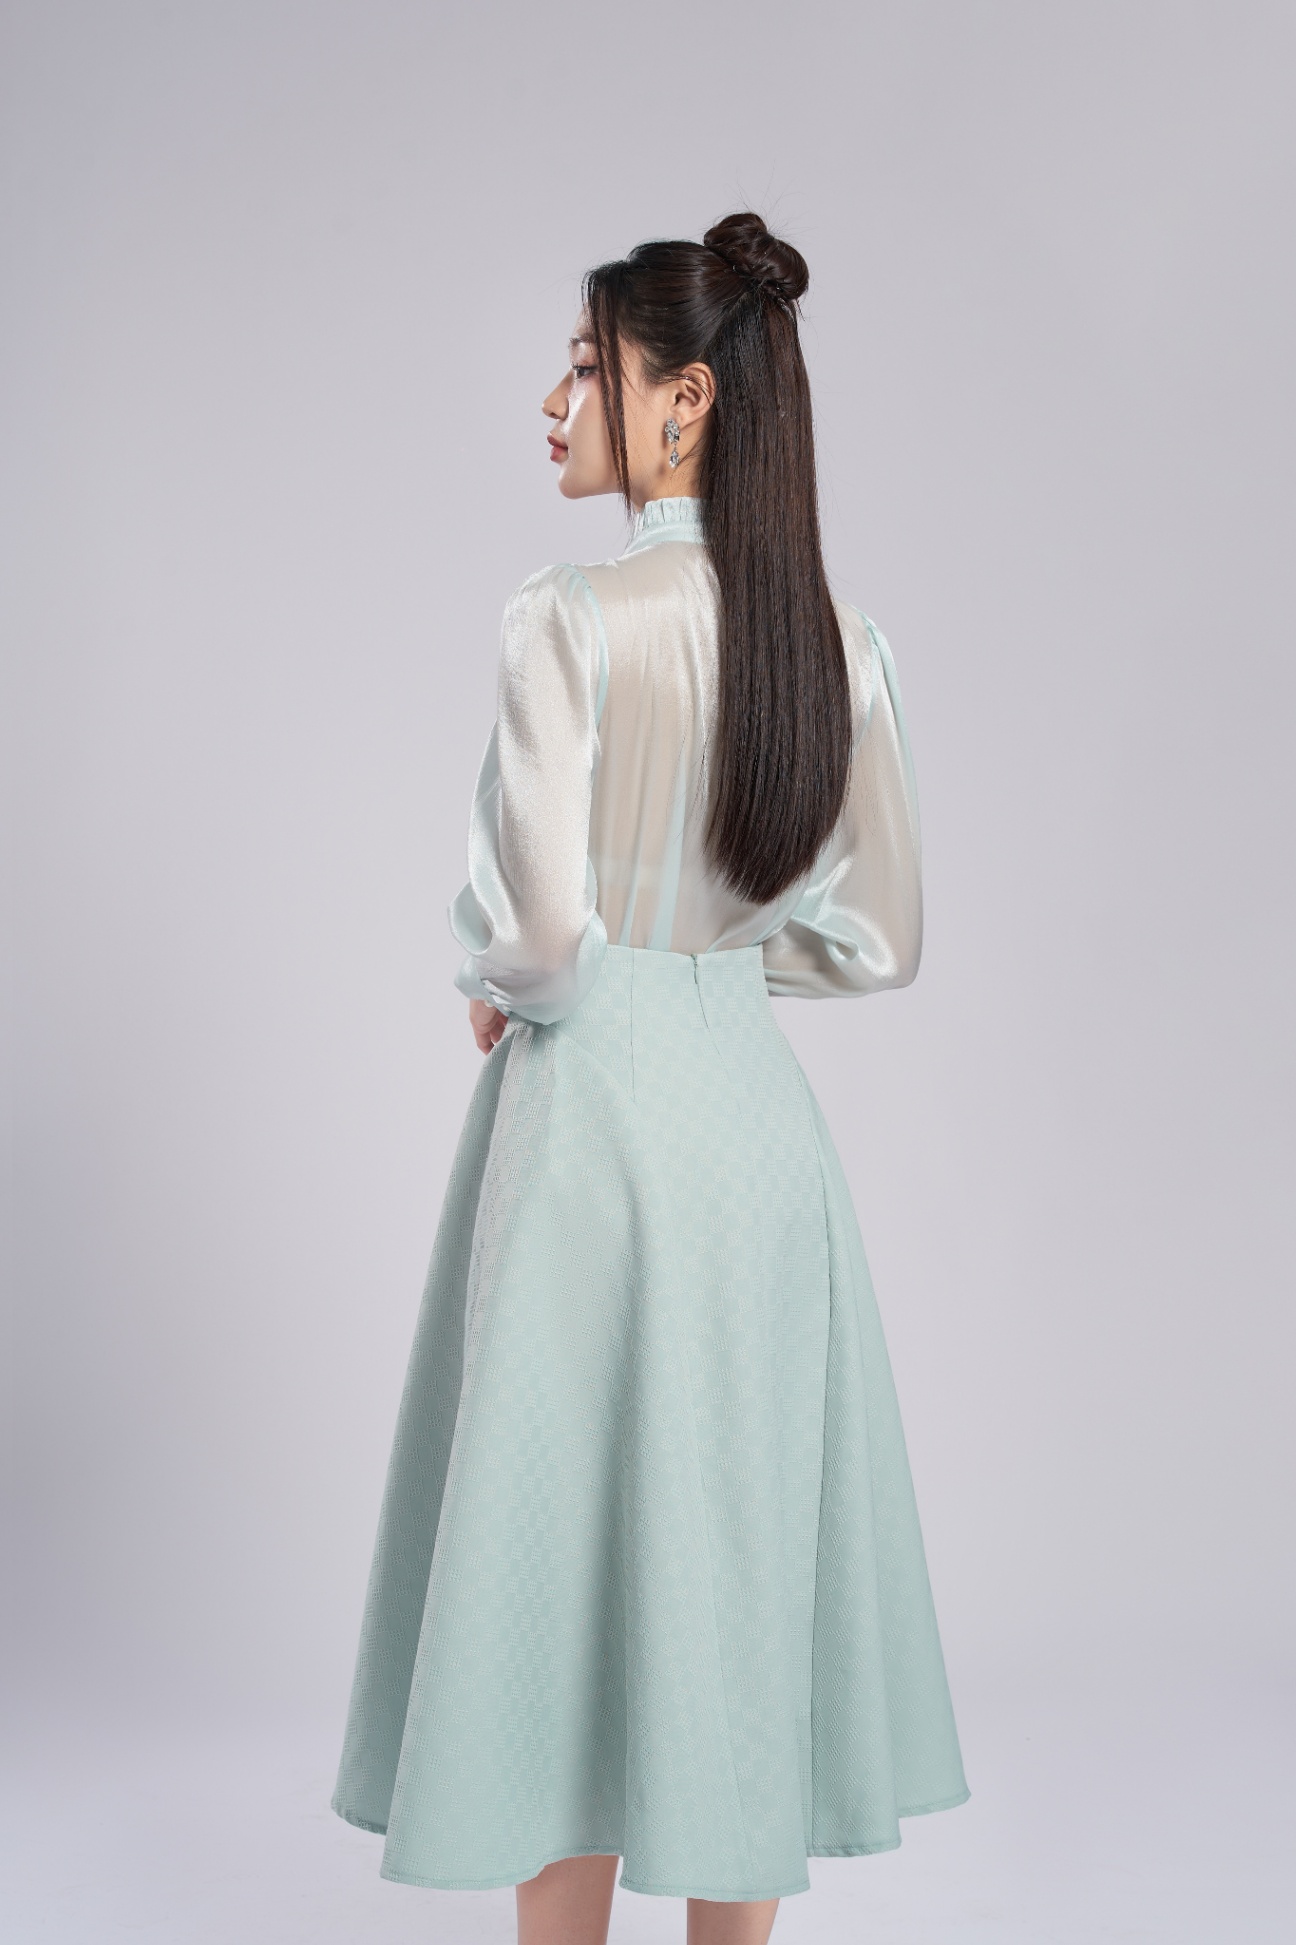 Top 10 Mẫu Váy Đầm Công Sở Hàng Hiệu Liền Thân Sang Trọng